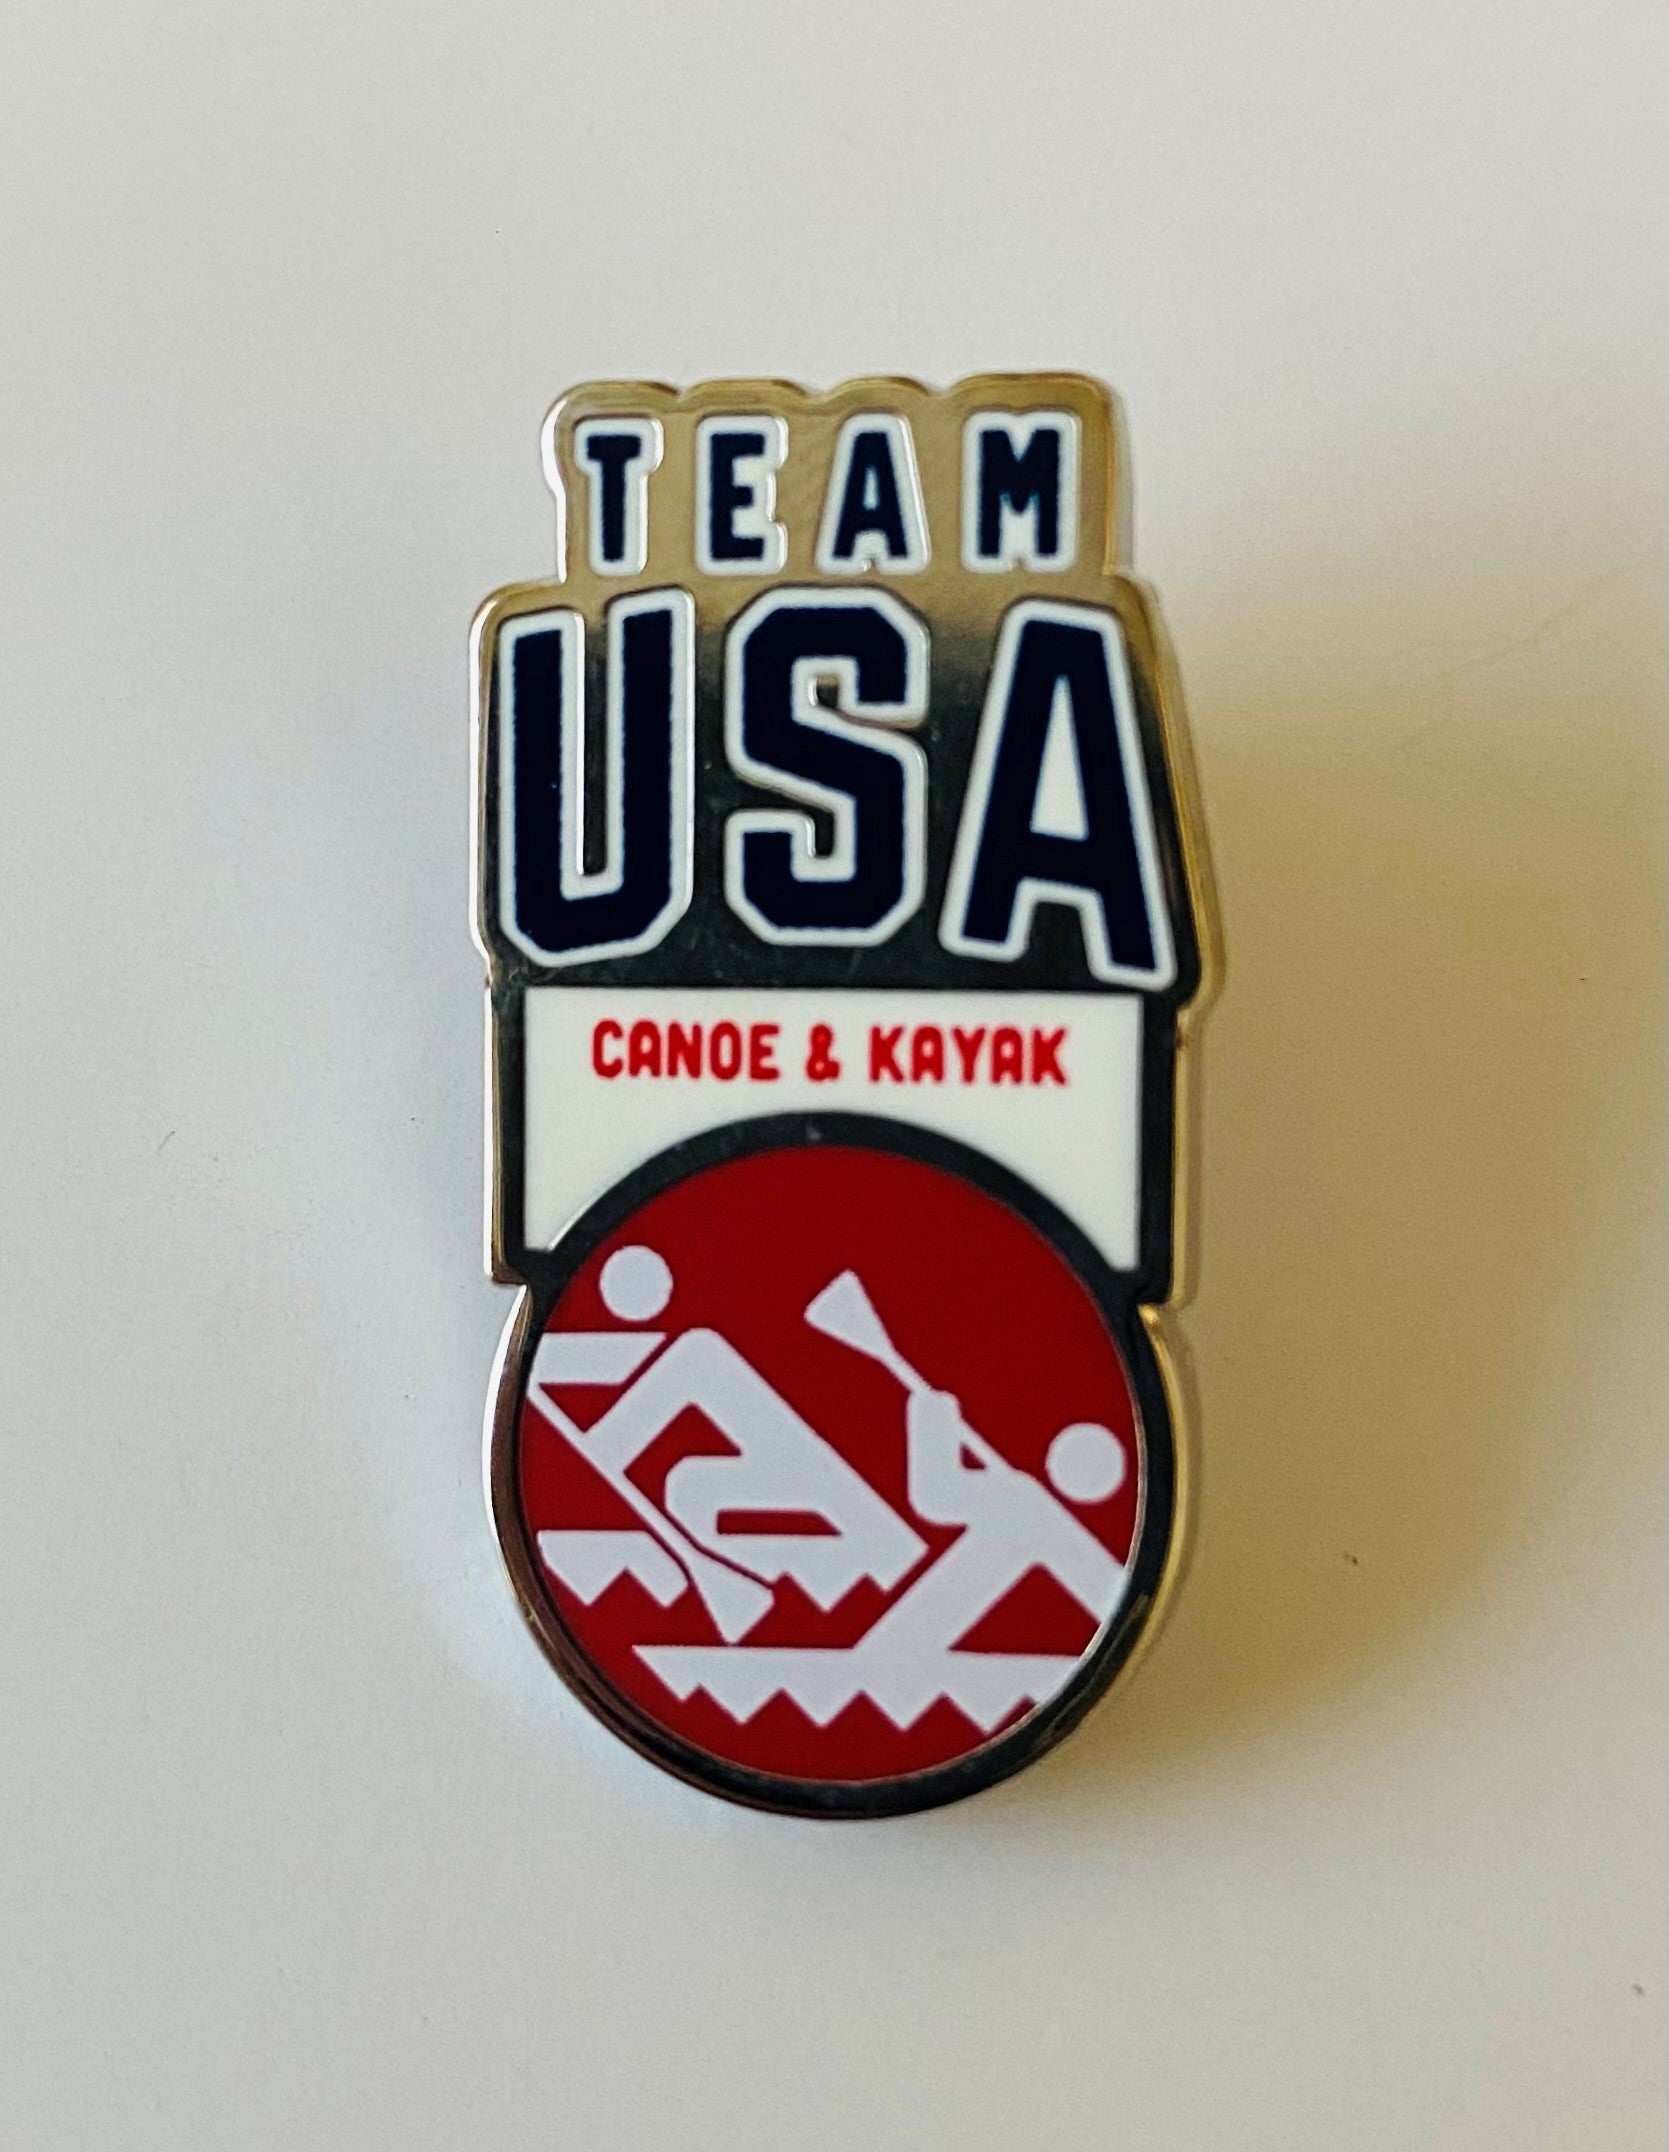 Team USA Canoe & Kayak Pictogram Pin